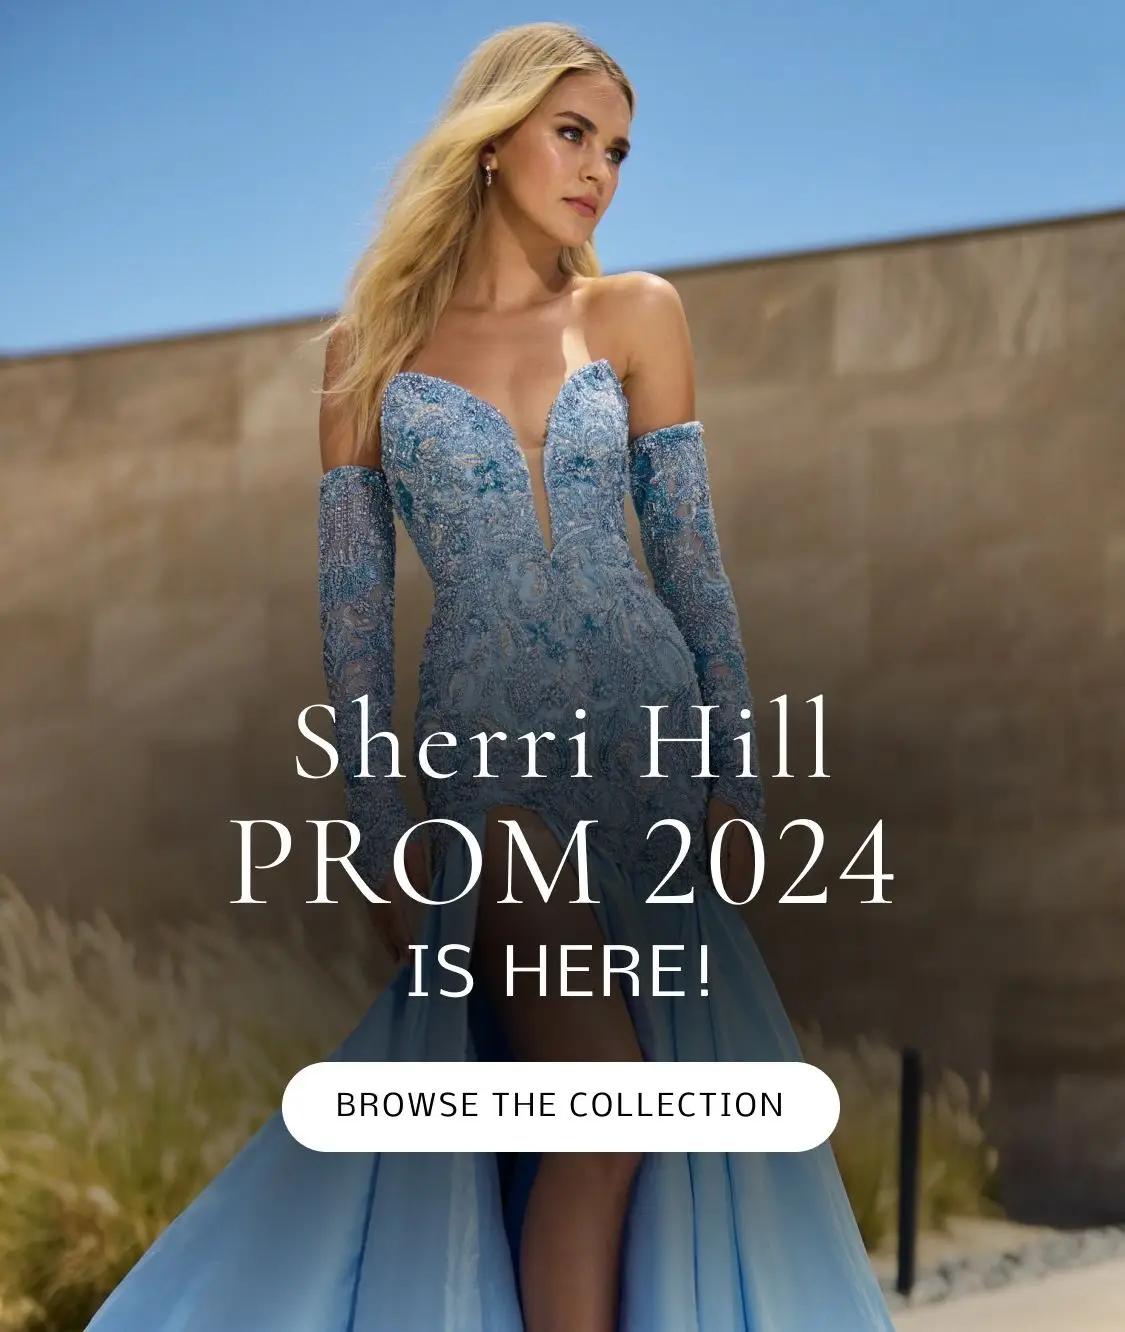 Sherri Hill 2024 Spring Prom banner desktop